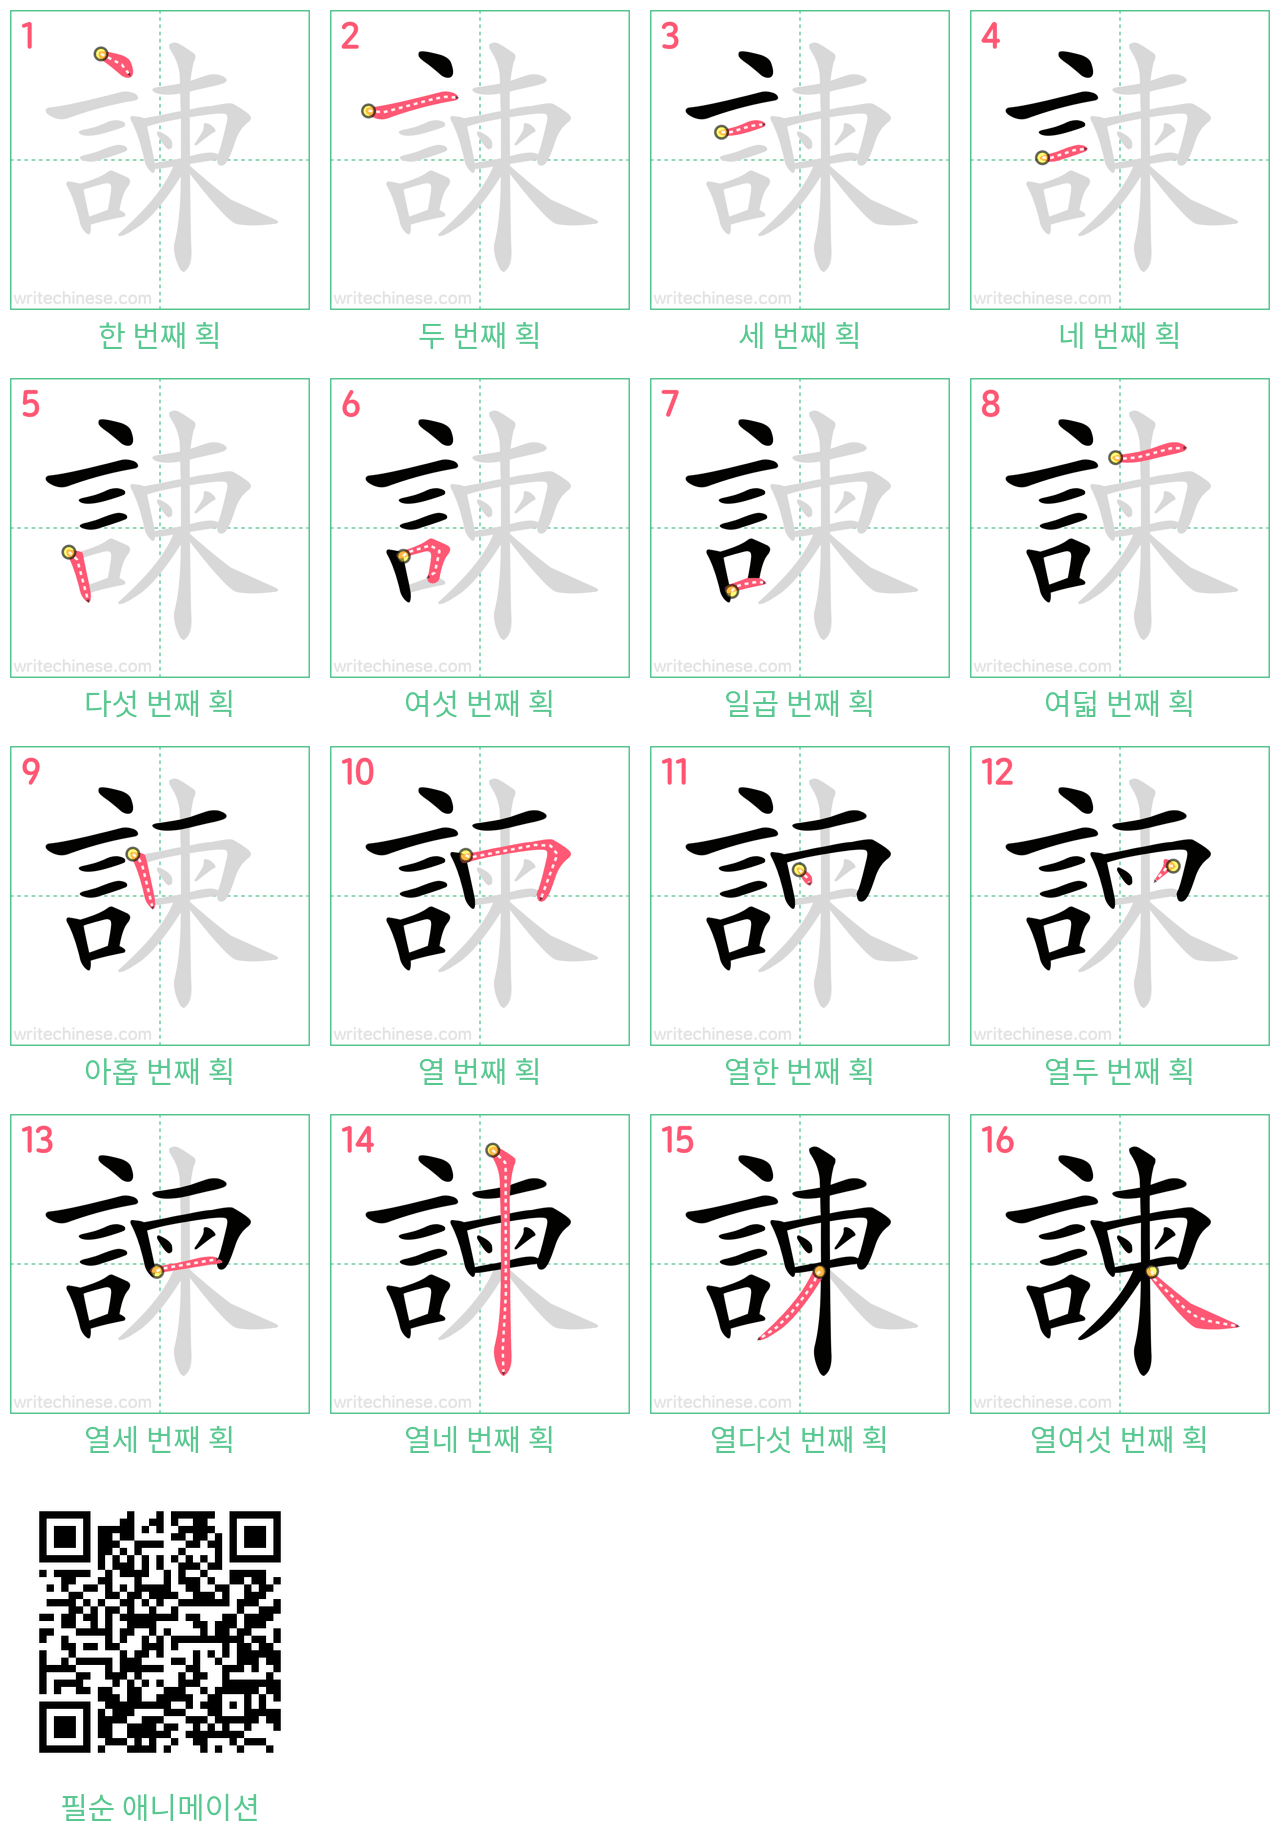 諫 step-by-step stroke order diagrams